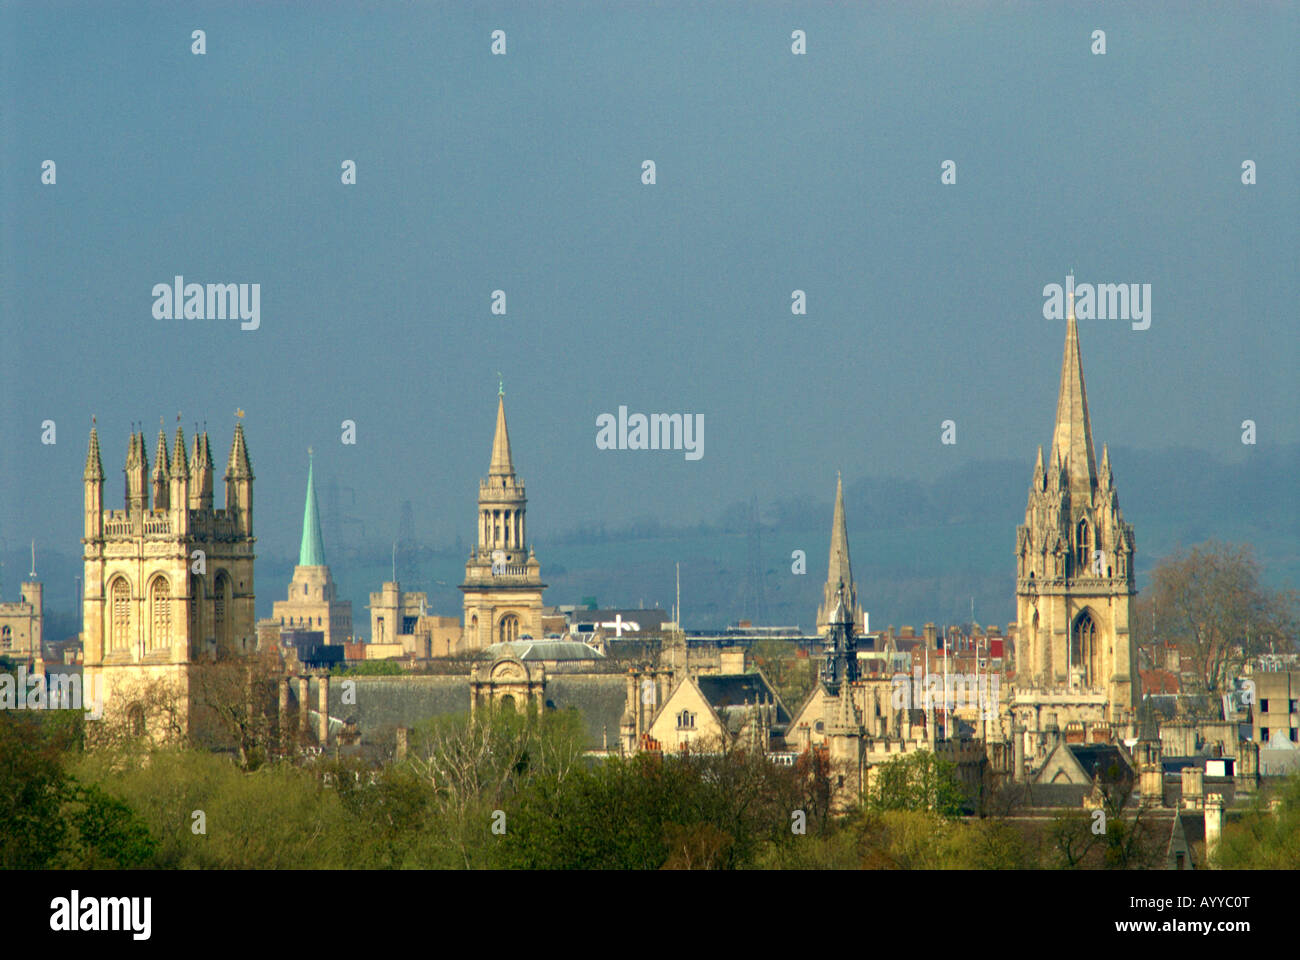 El Dreaming de Oxford Spires visto desde parques del sur Foto de stock